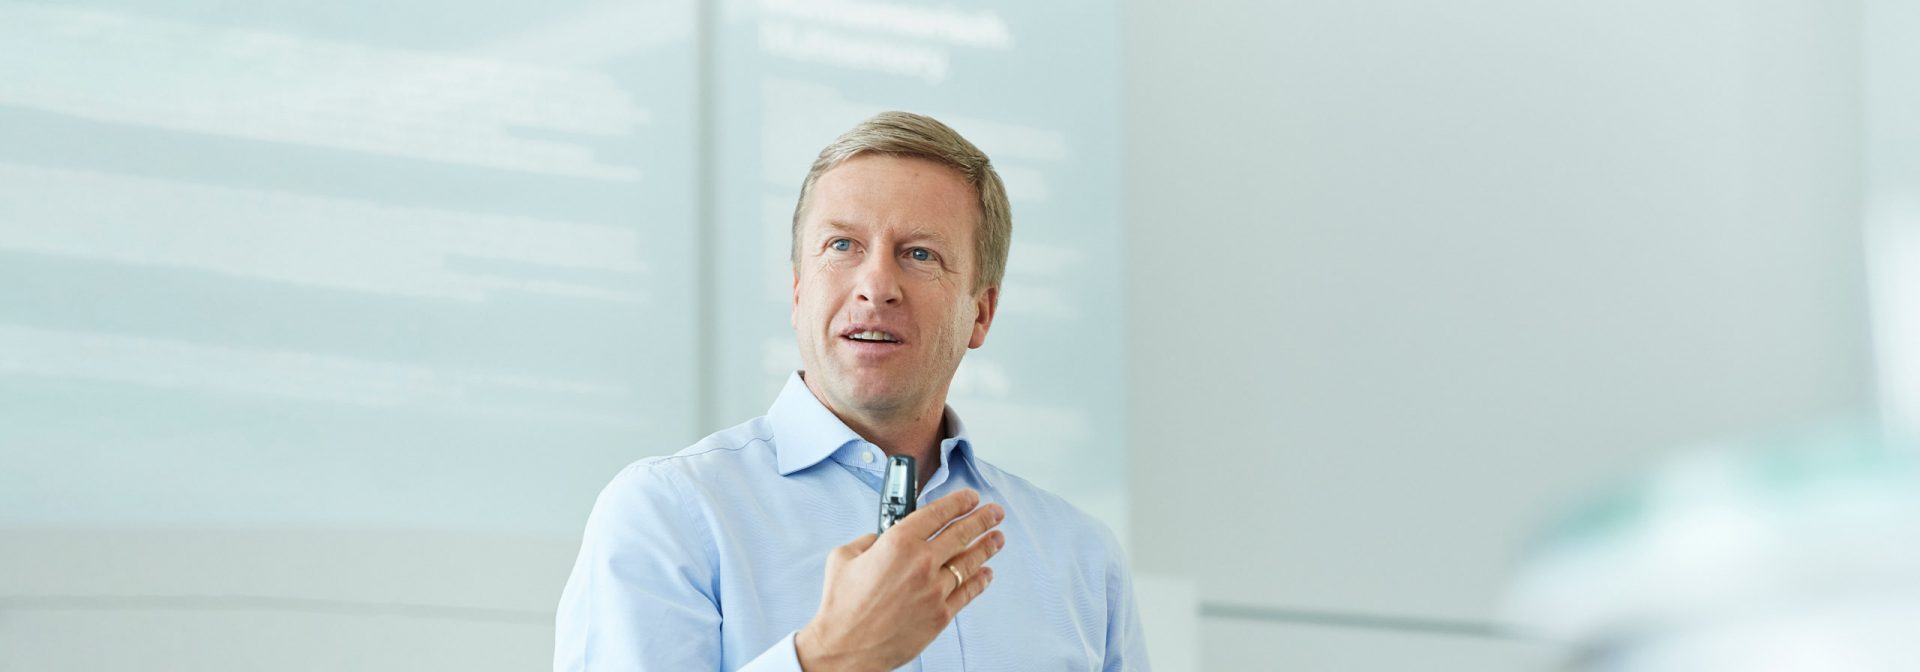 Oliver Zipse, Vorstandsvorsitzender der BMW Group.